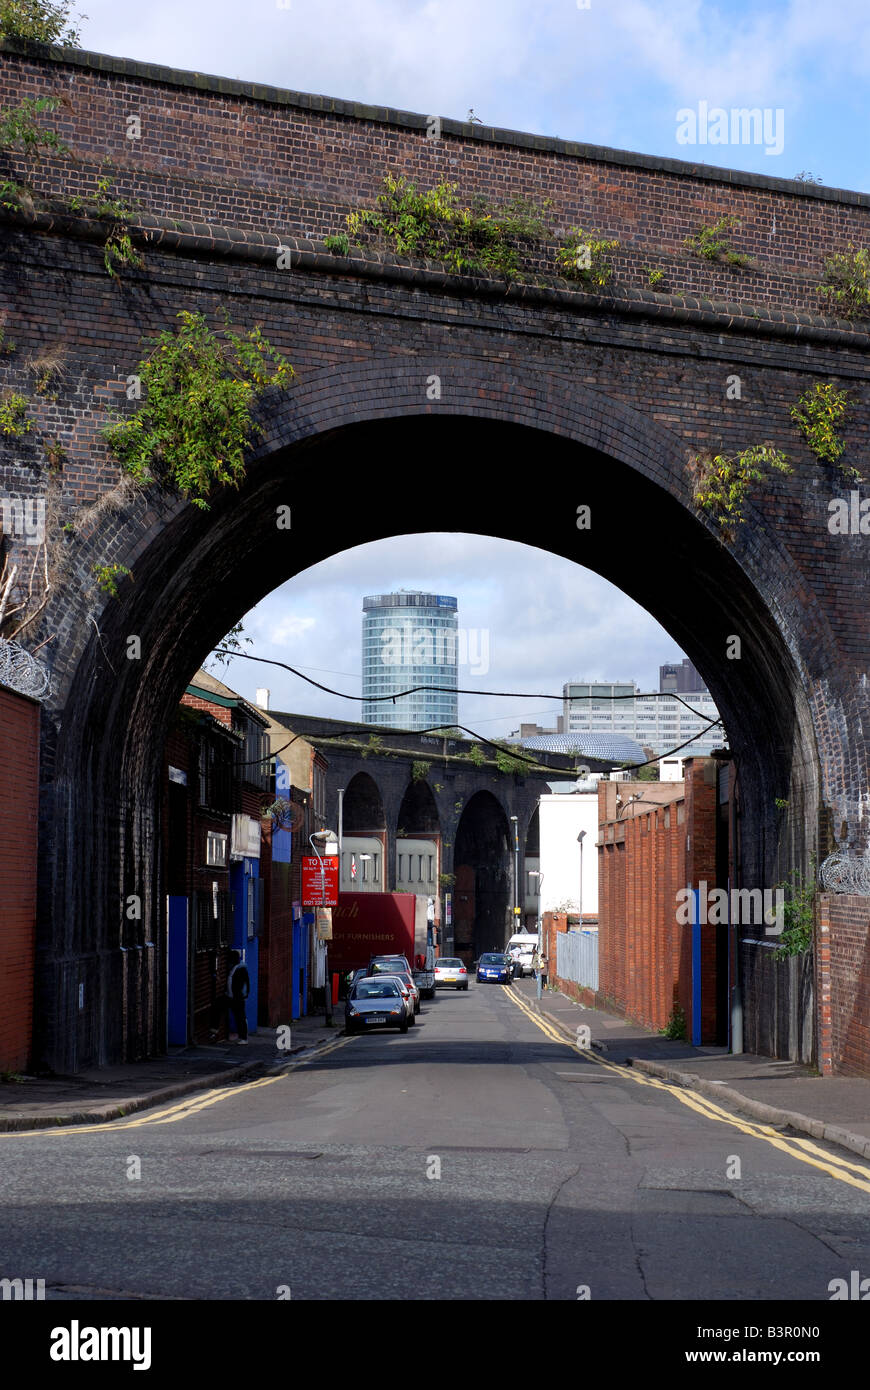 Zeigen Sie unter der Eisenbahnbrücke in Richtung der Rotunde Digbeth, Birmingham, West Midlands, England, UK an Stockfoto